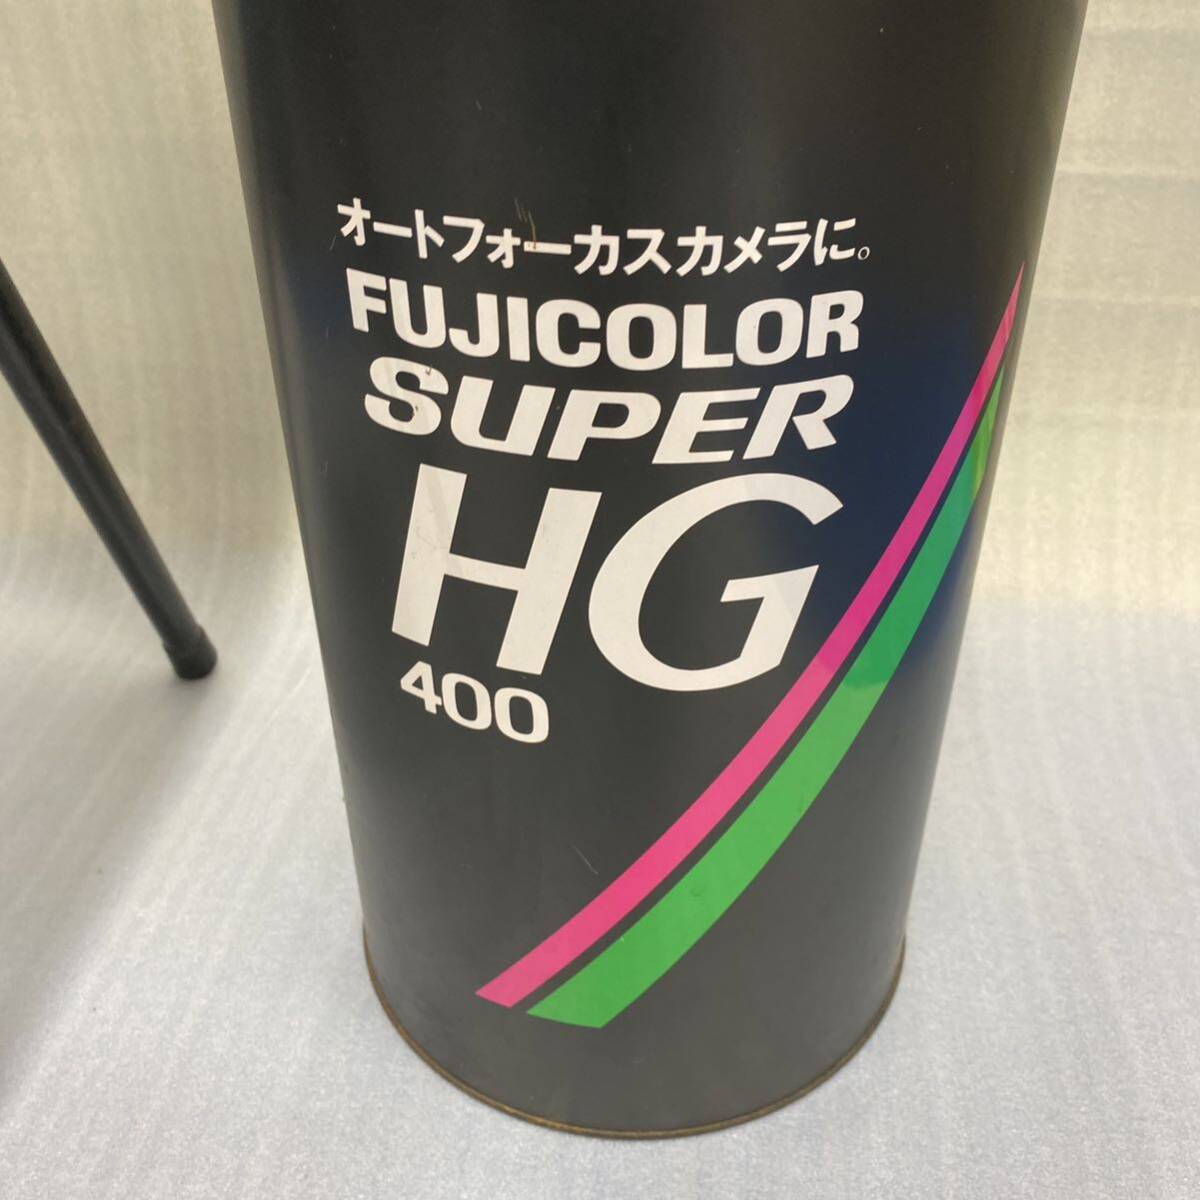  подлинная вещь *FUJICOLOR SUPER HG 400 стремянка стремянка мусорка 2 пункт совместно комплект Fuji цвет произведение искусства реклама .. металлический 